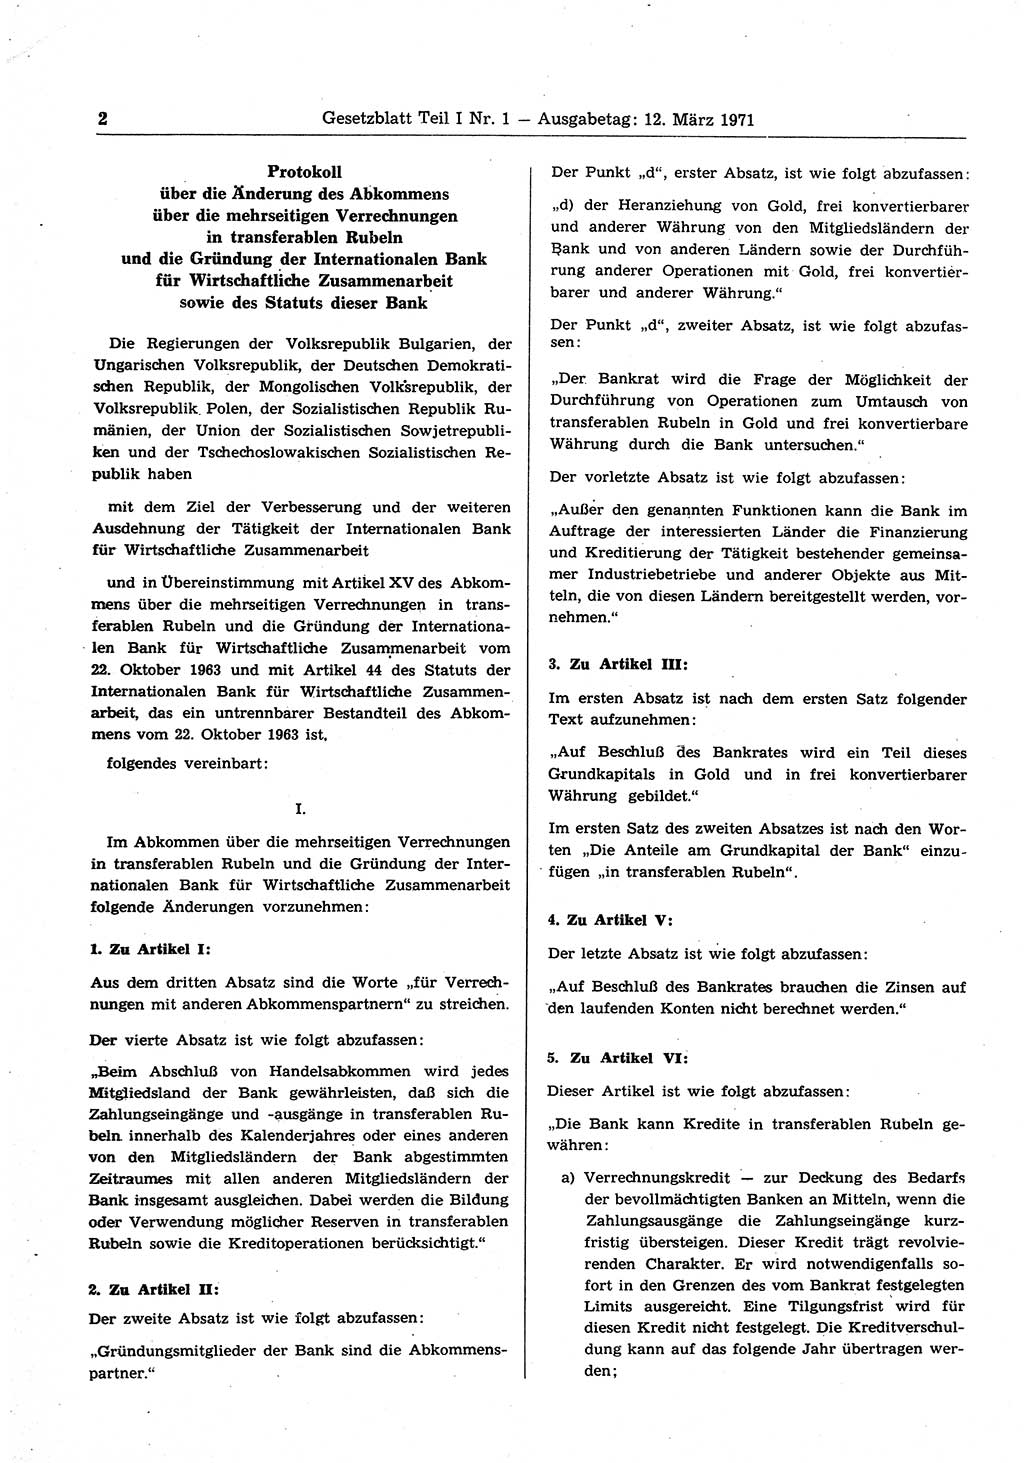 Gesetzblatt (GBl.) der Deutschen Demokratischen Republik (DDR) Teil Ⅰ 1971, Seite 2 (GBl. DDR Ⅰ 1971, S. 2)